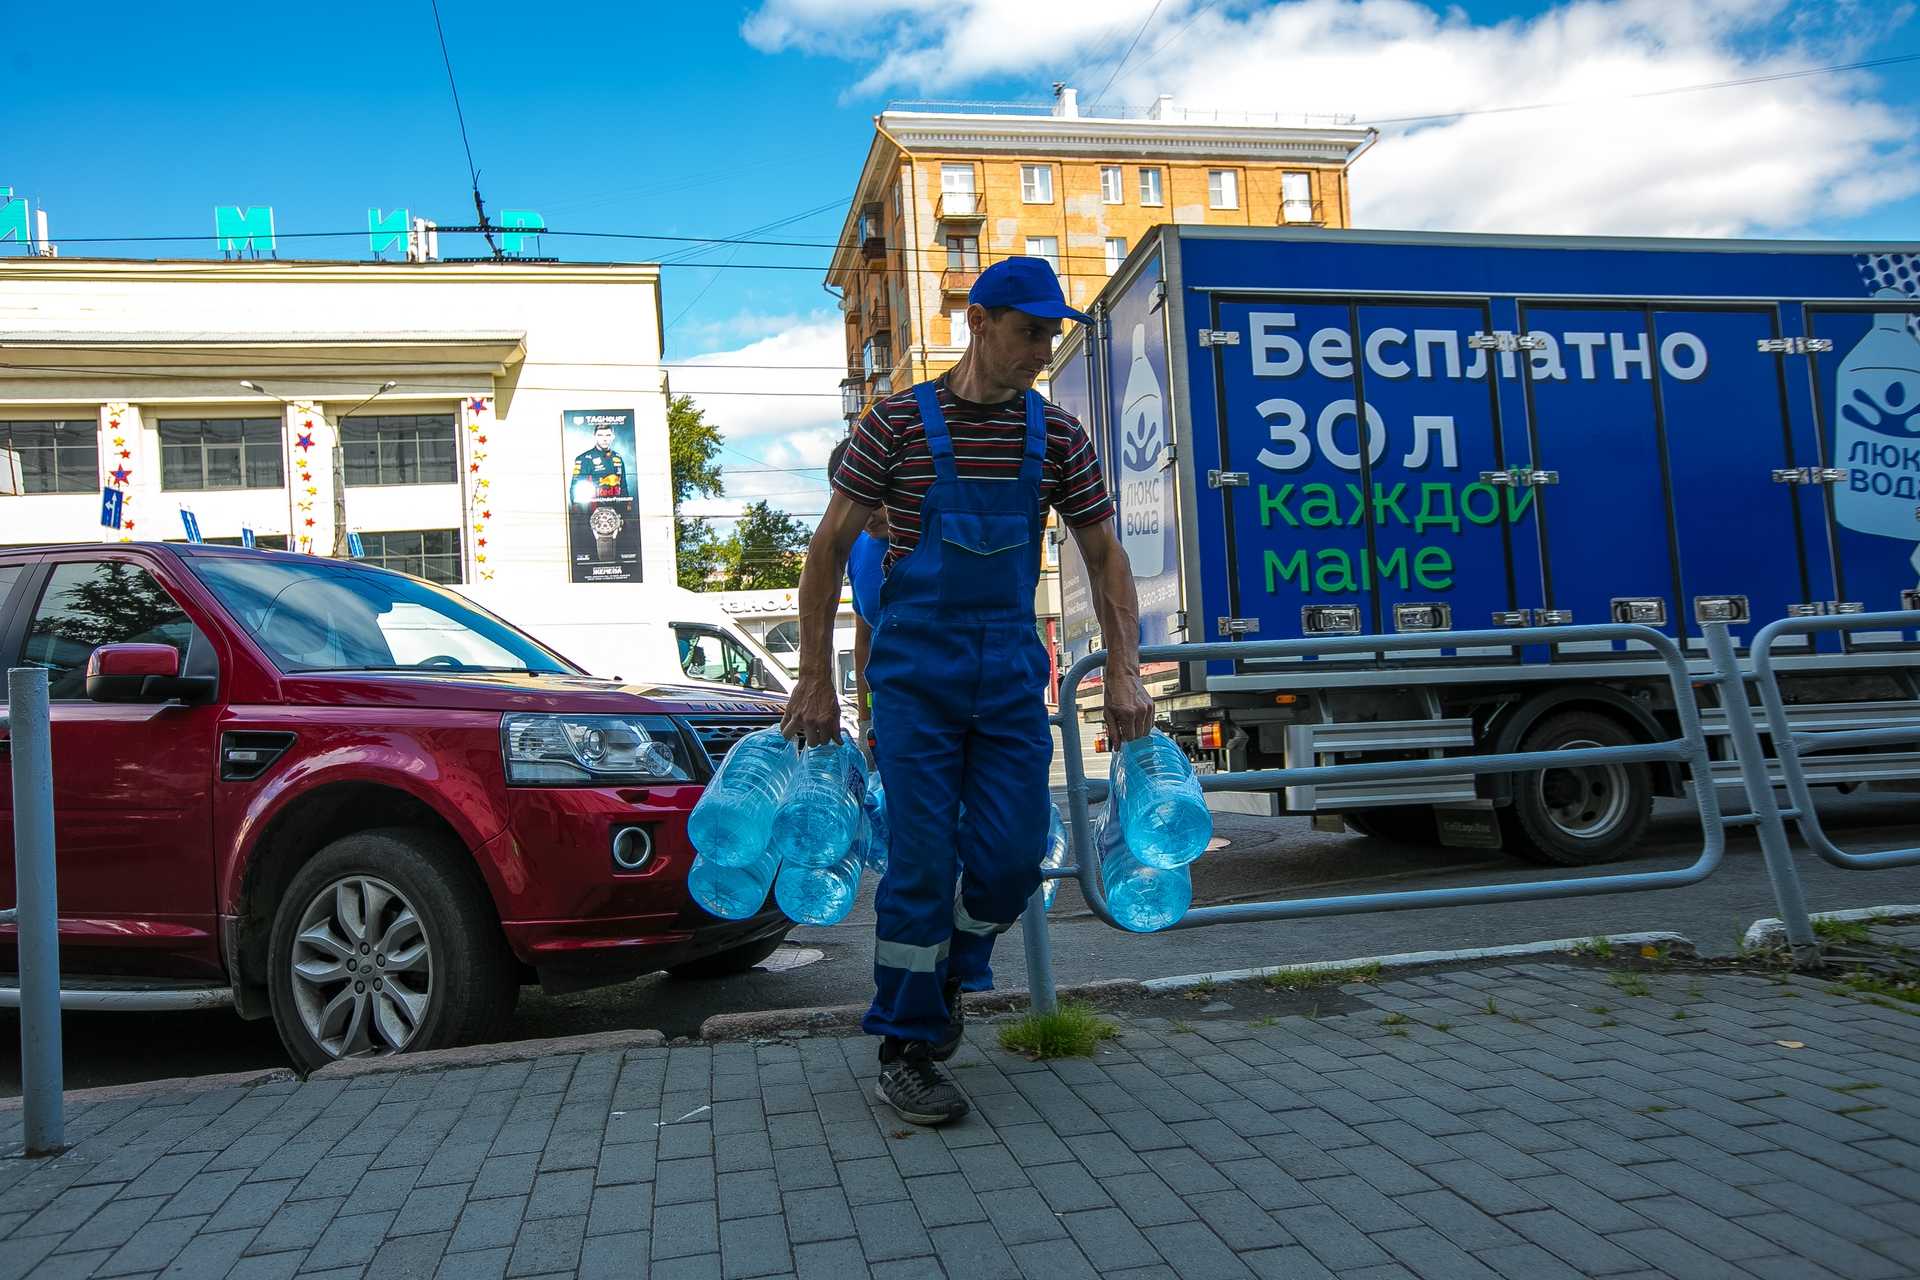 Практически каждая вторая бутылка питьевой воды в России поддельная